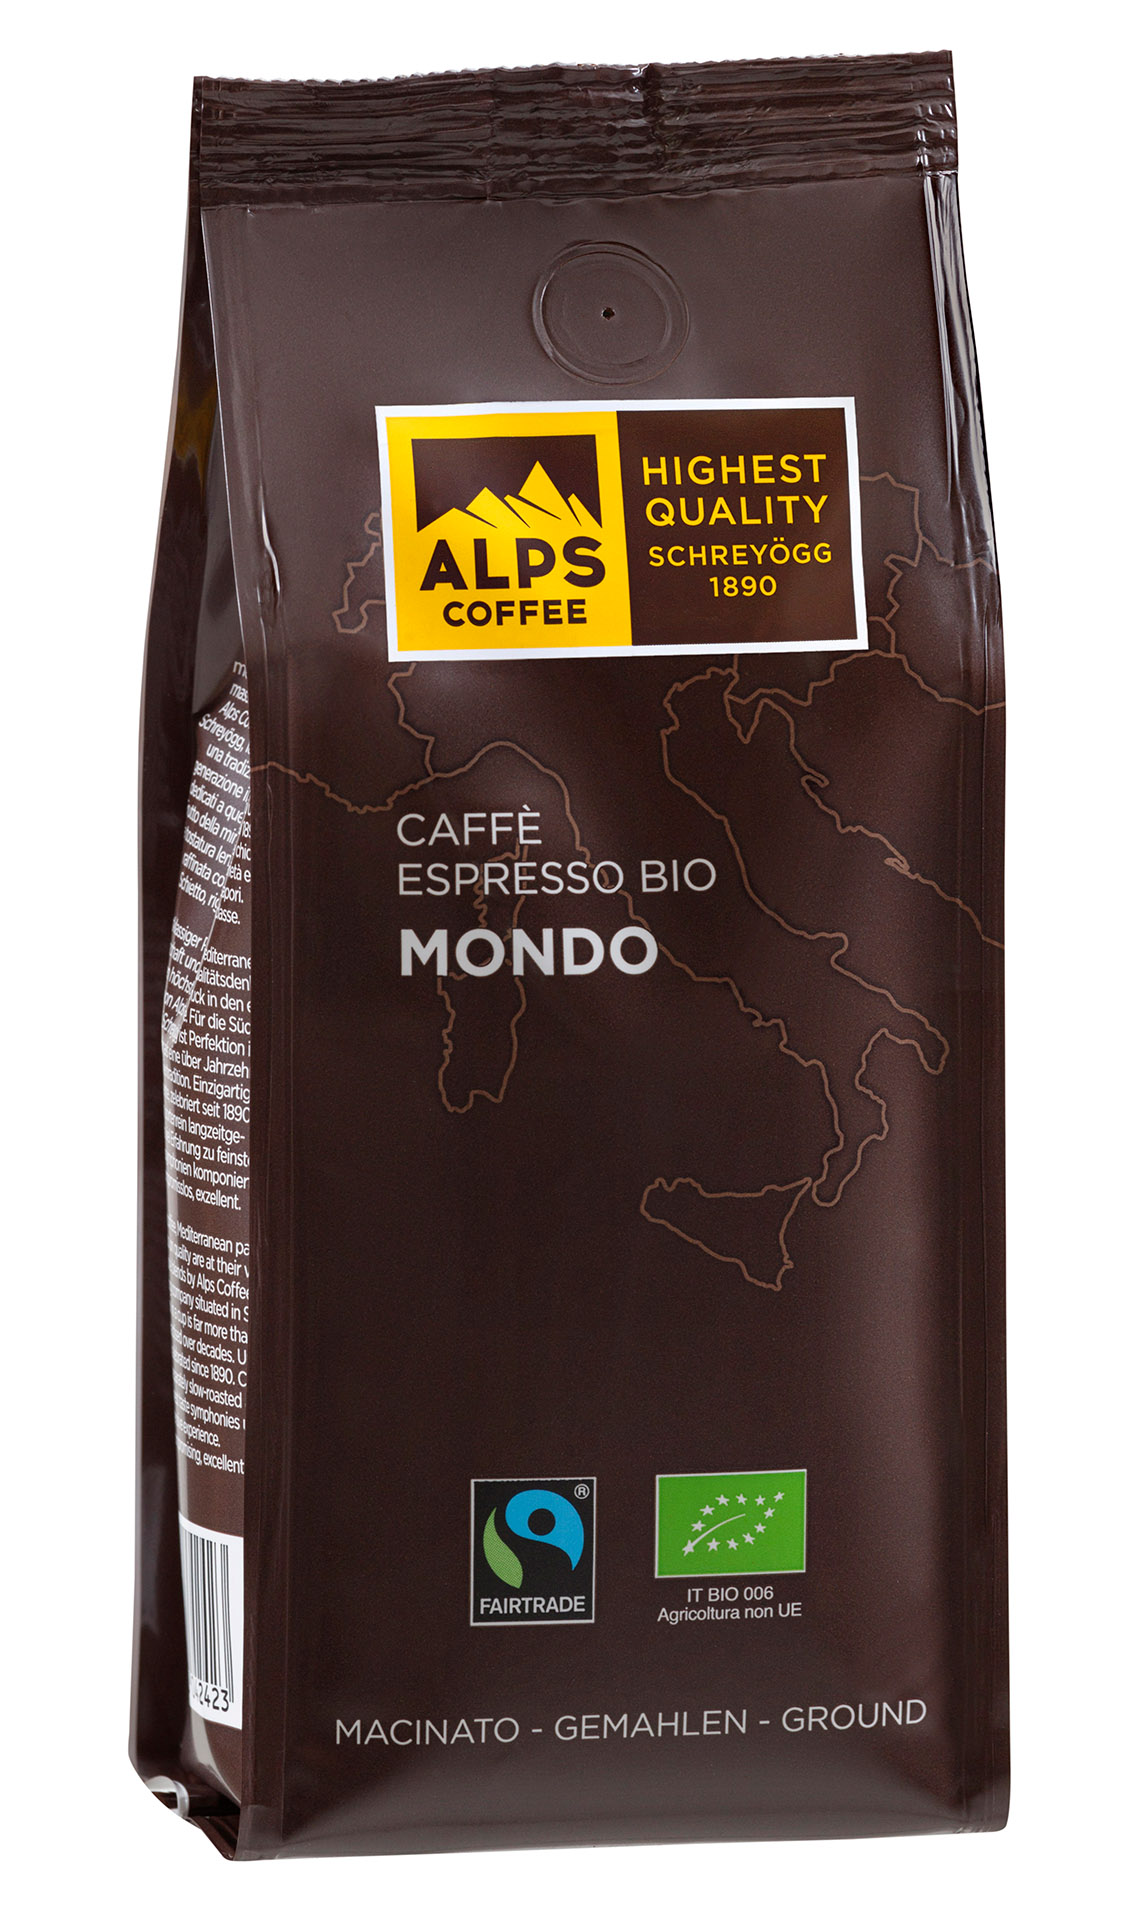 Caffè Espresso Bio Mondo (Flo) 250g